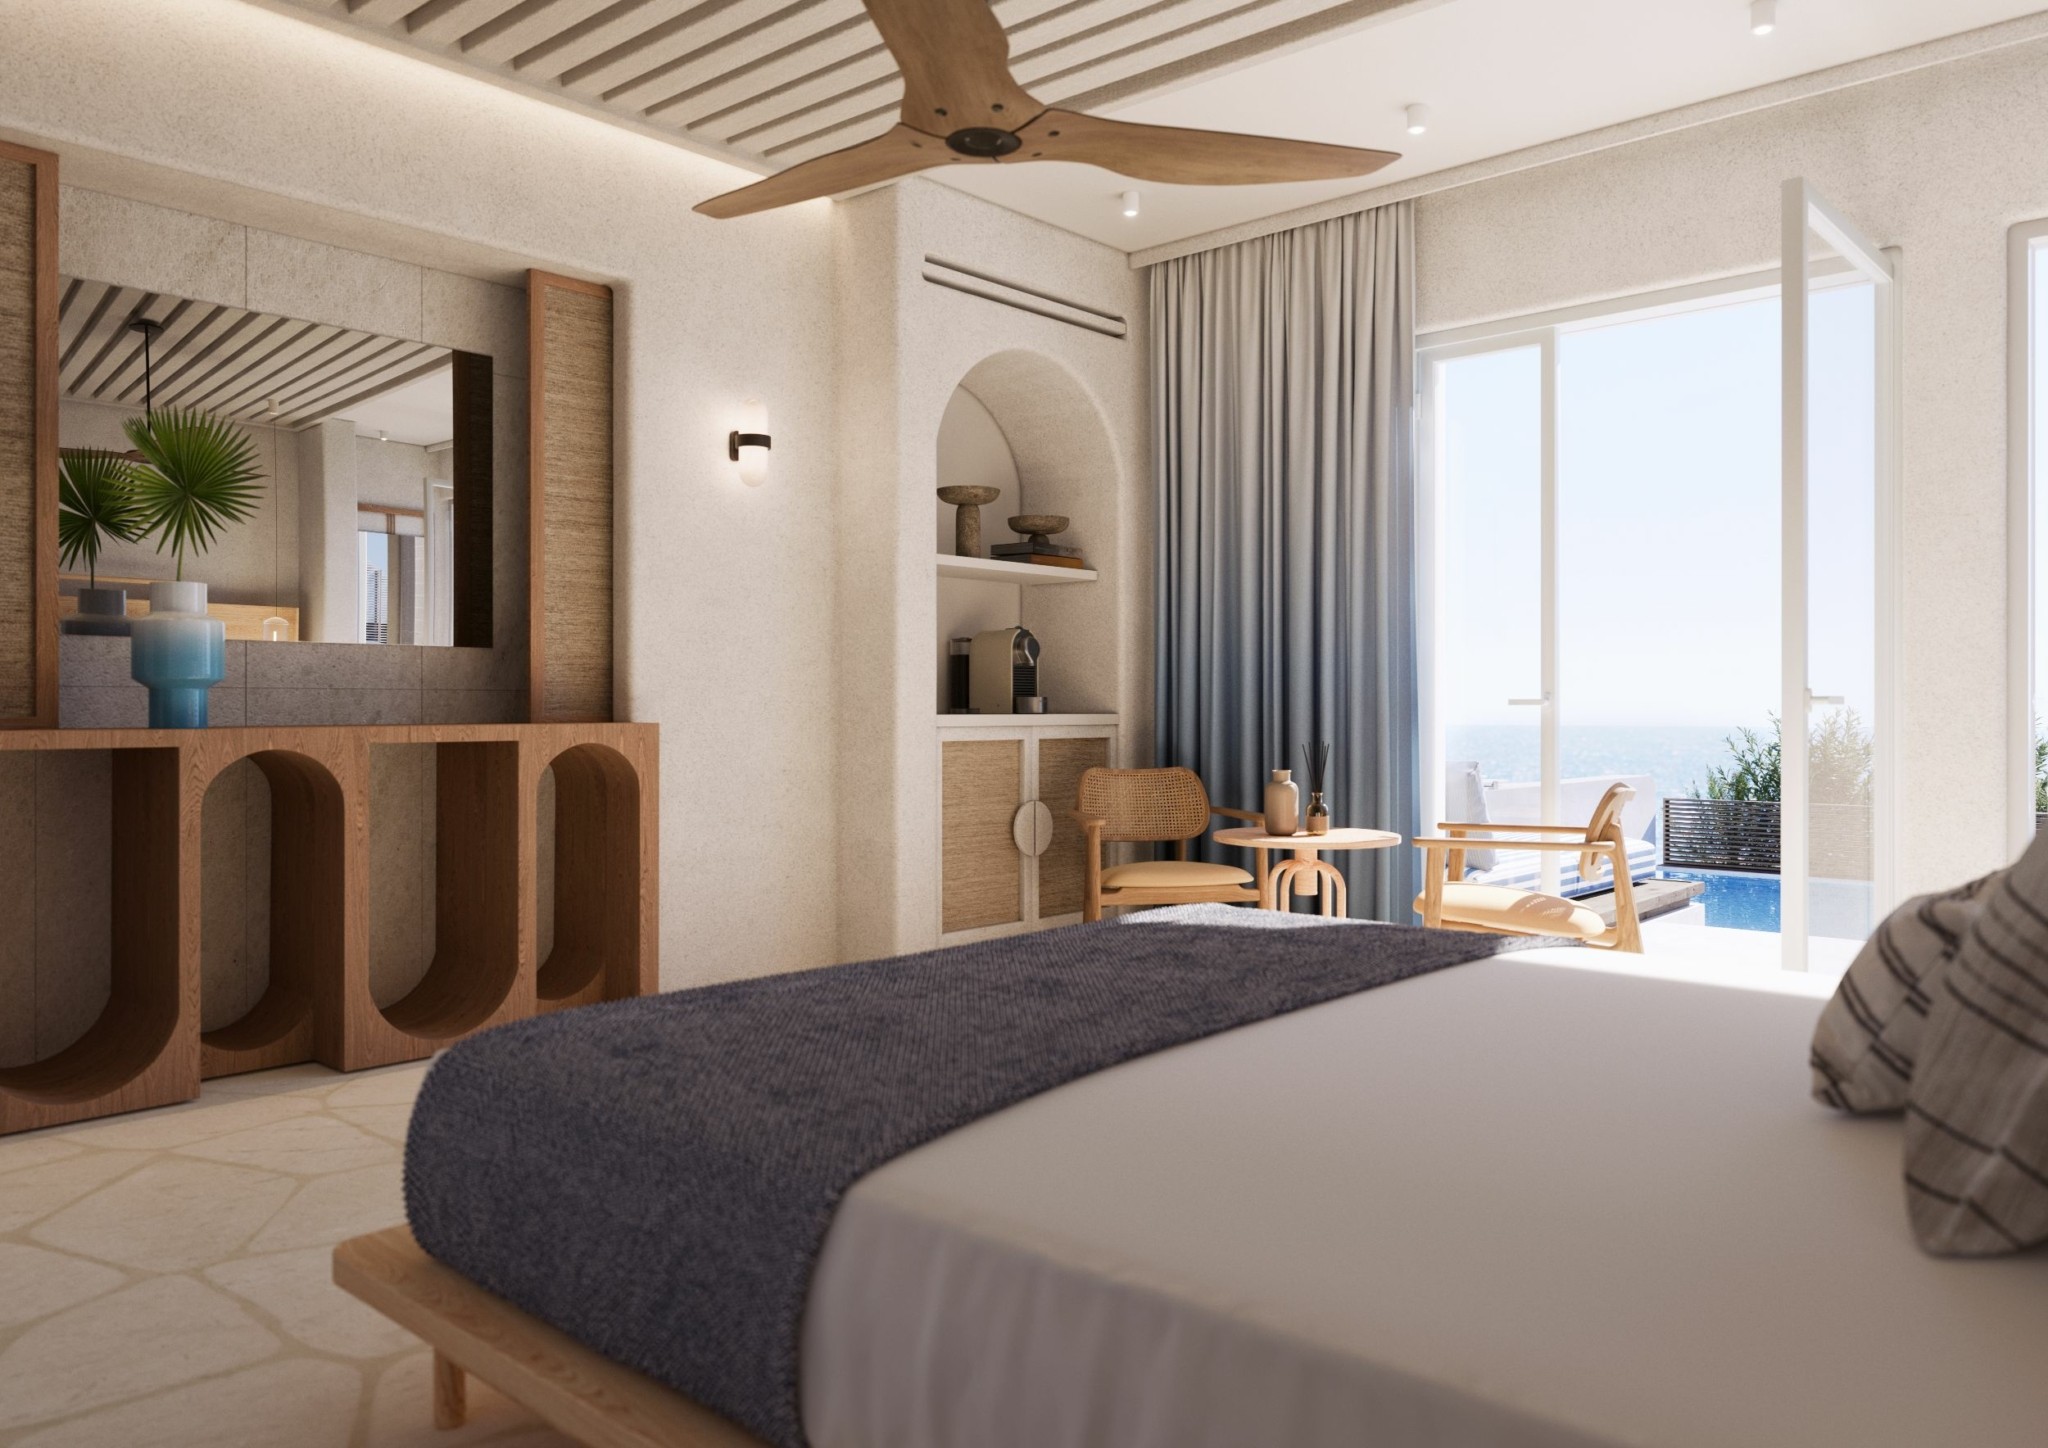 Avant Mar: Ξεκινά το καλοκαίρι του 2023 η νέα τουριστική επένδυση της Grivalia Hospitality στην Πάρο (pics)